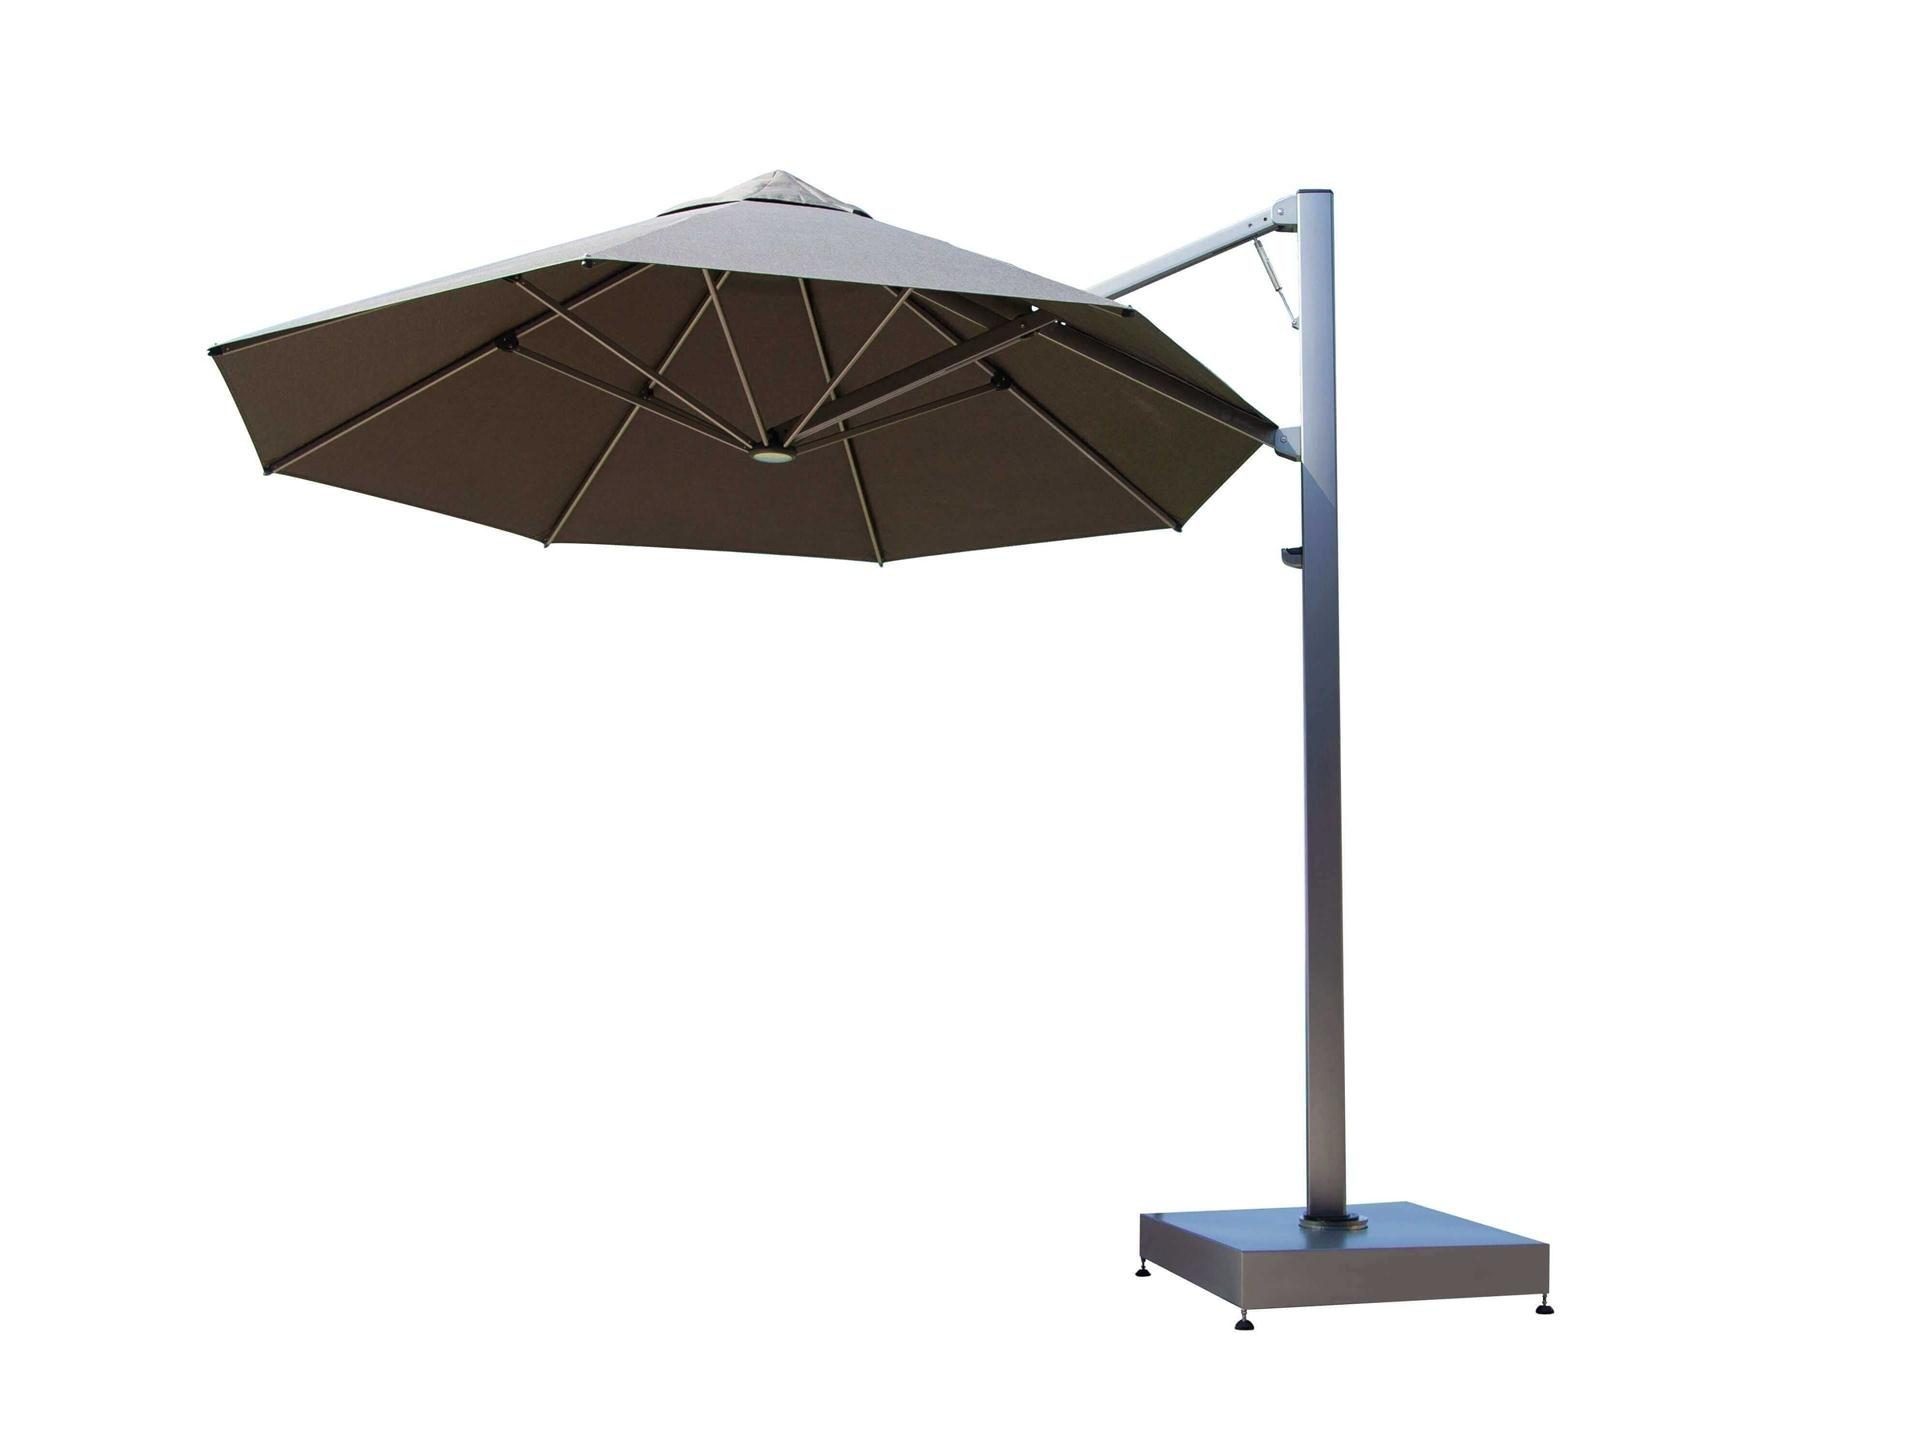 Shadowspec Serenity™ Rotating Cantilever Umbrella